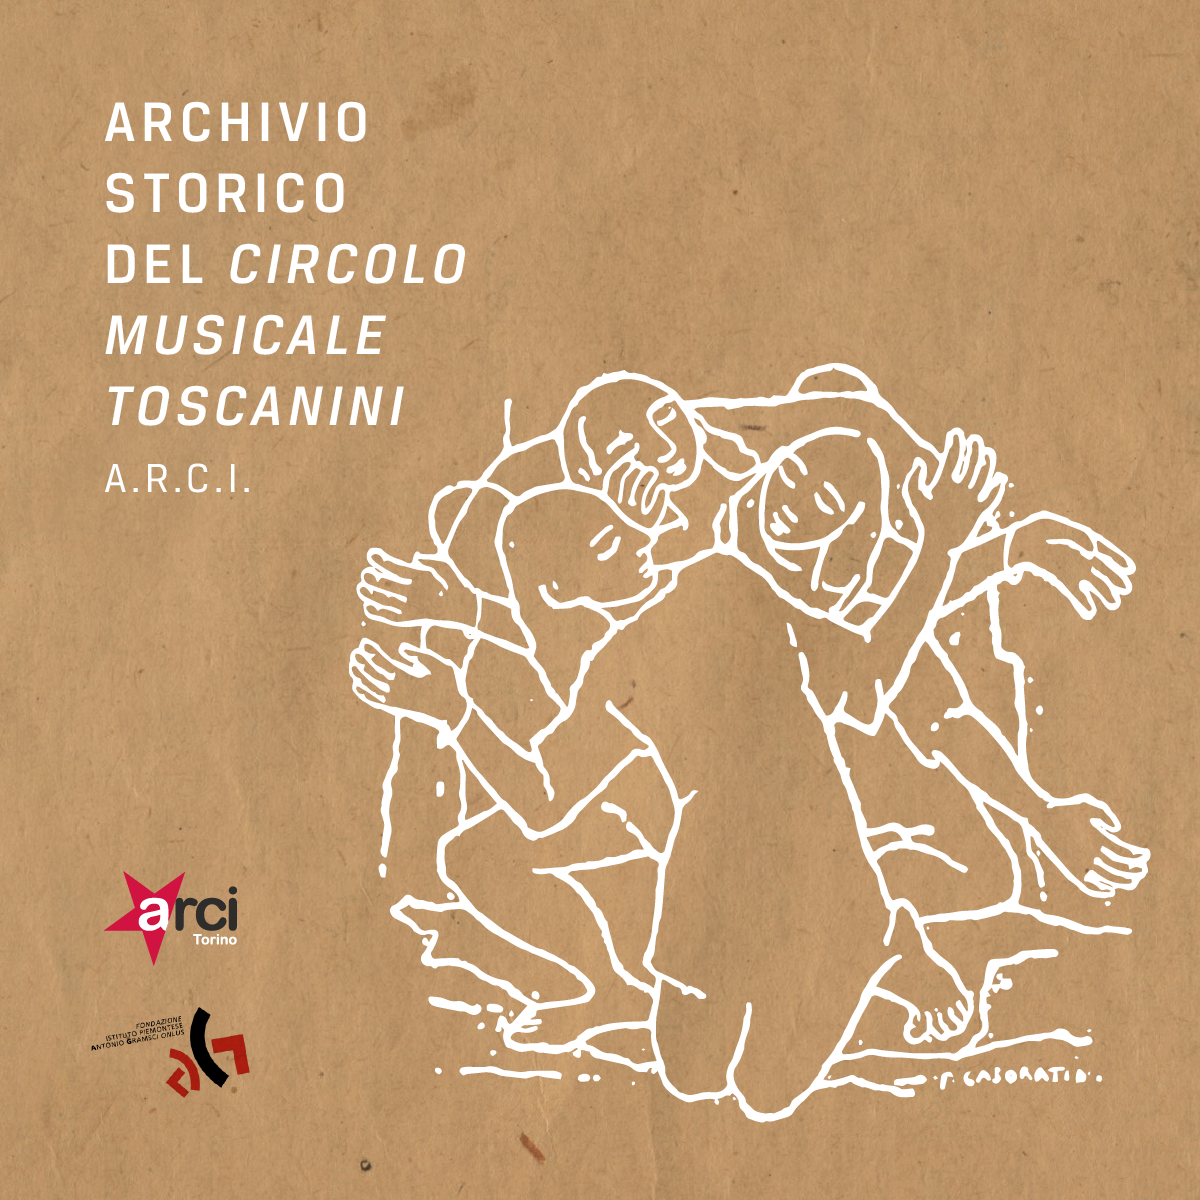 Dall’Archivio del Circolo Musicale Arturo Toscanini, un appello per la pace arrivato da Berlino nel 1961